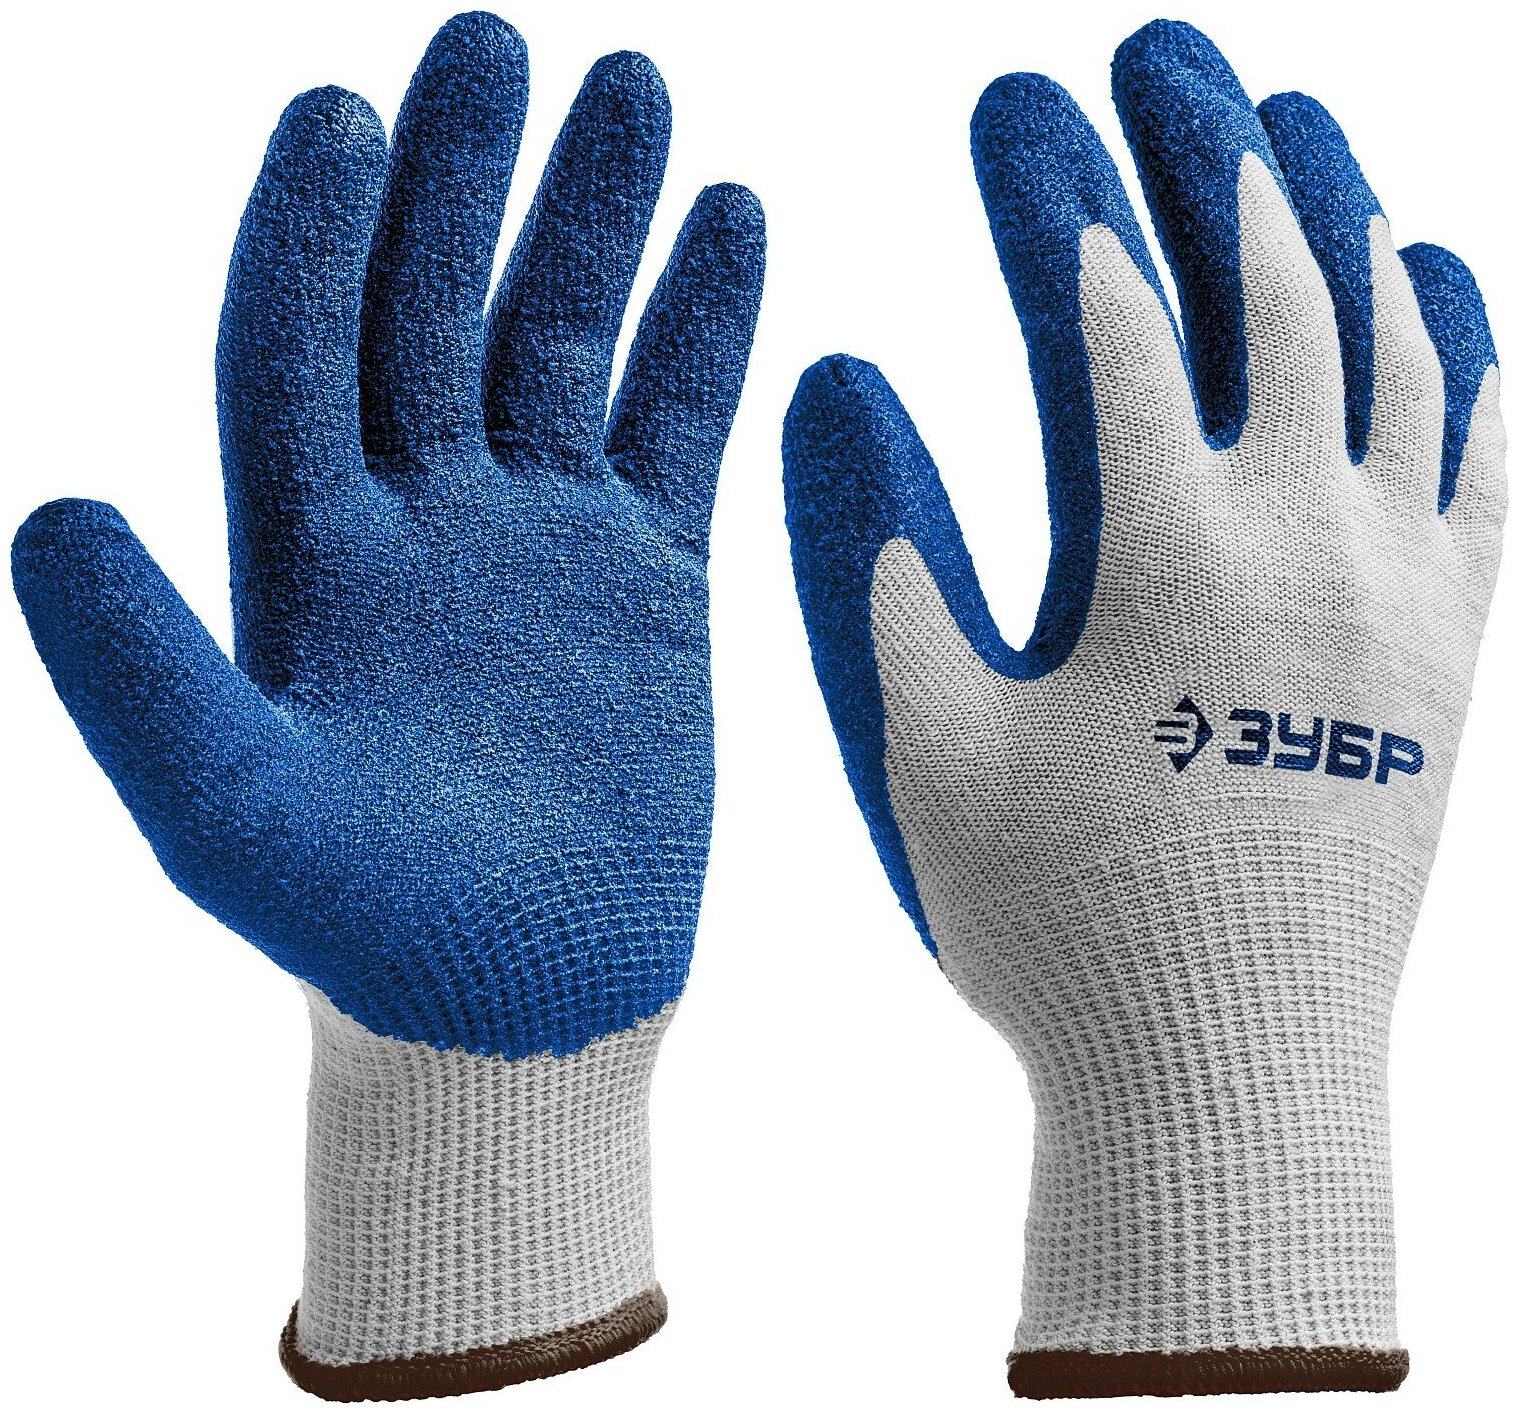 ЗУБР захват, размер S-M, перчатки с одинарным текстурированным нитриловым обливом